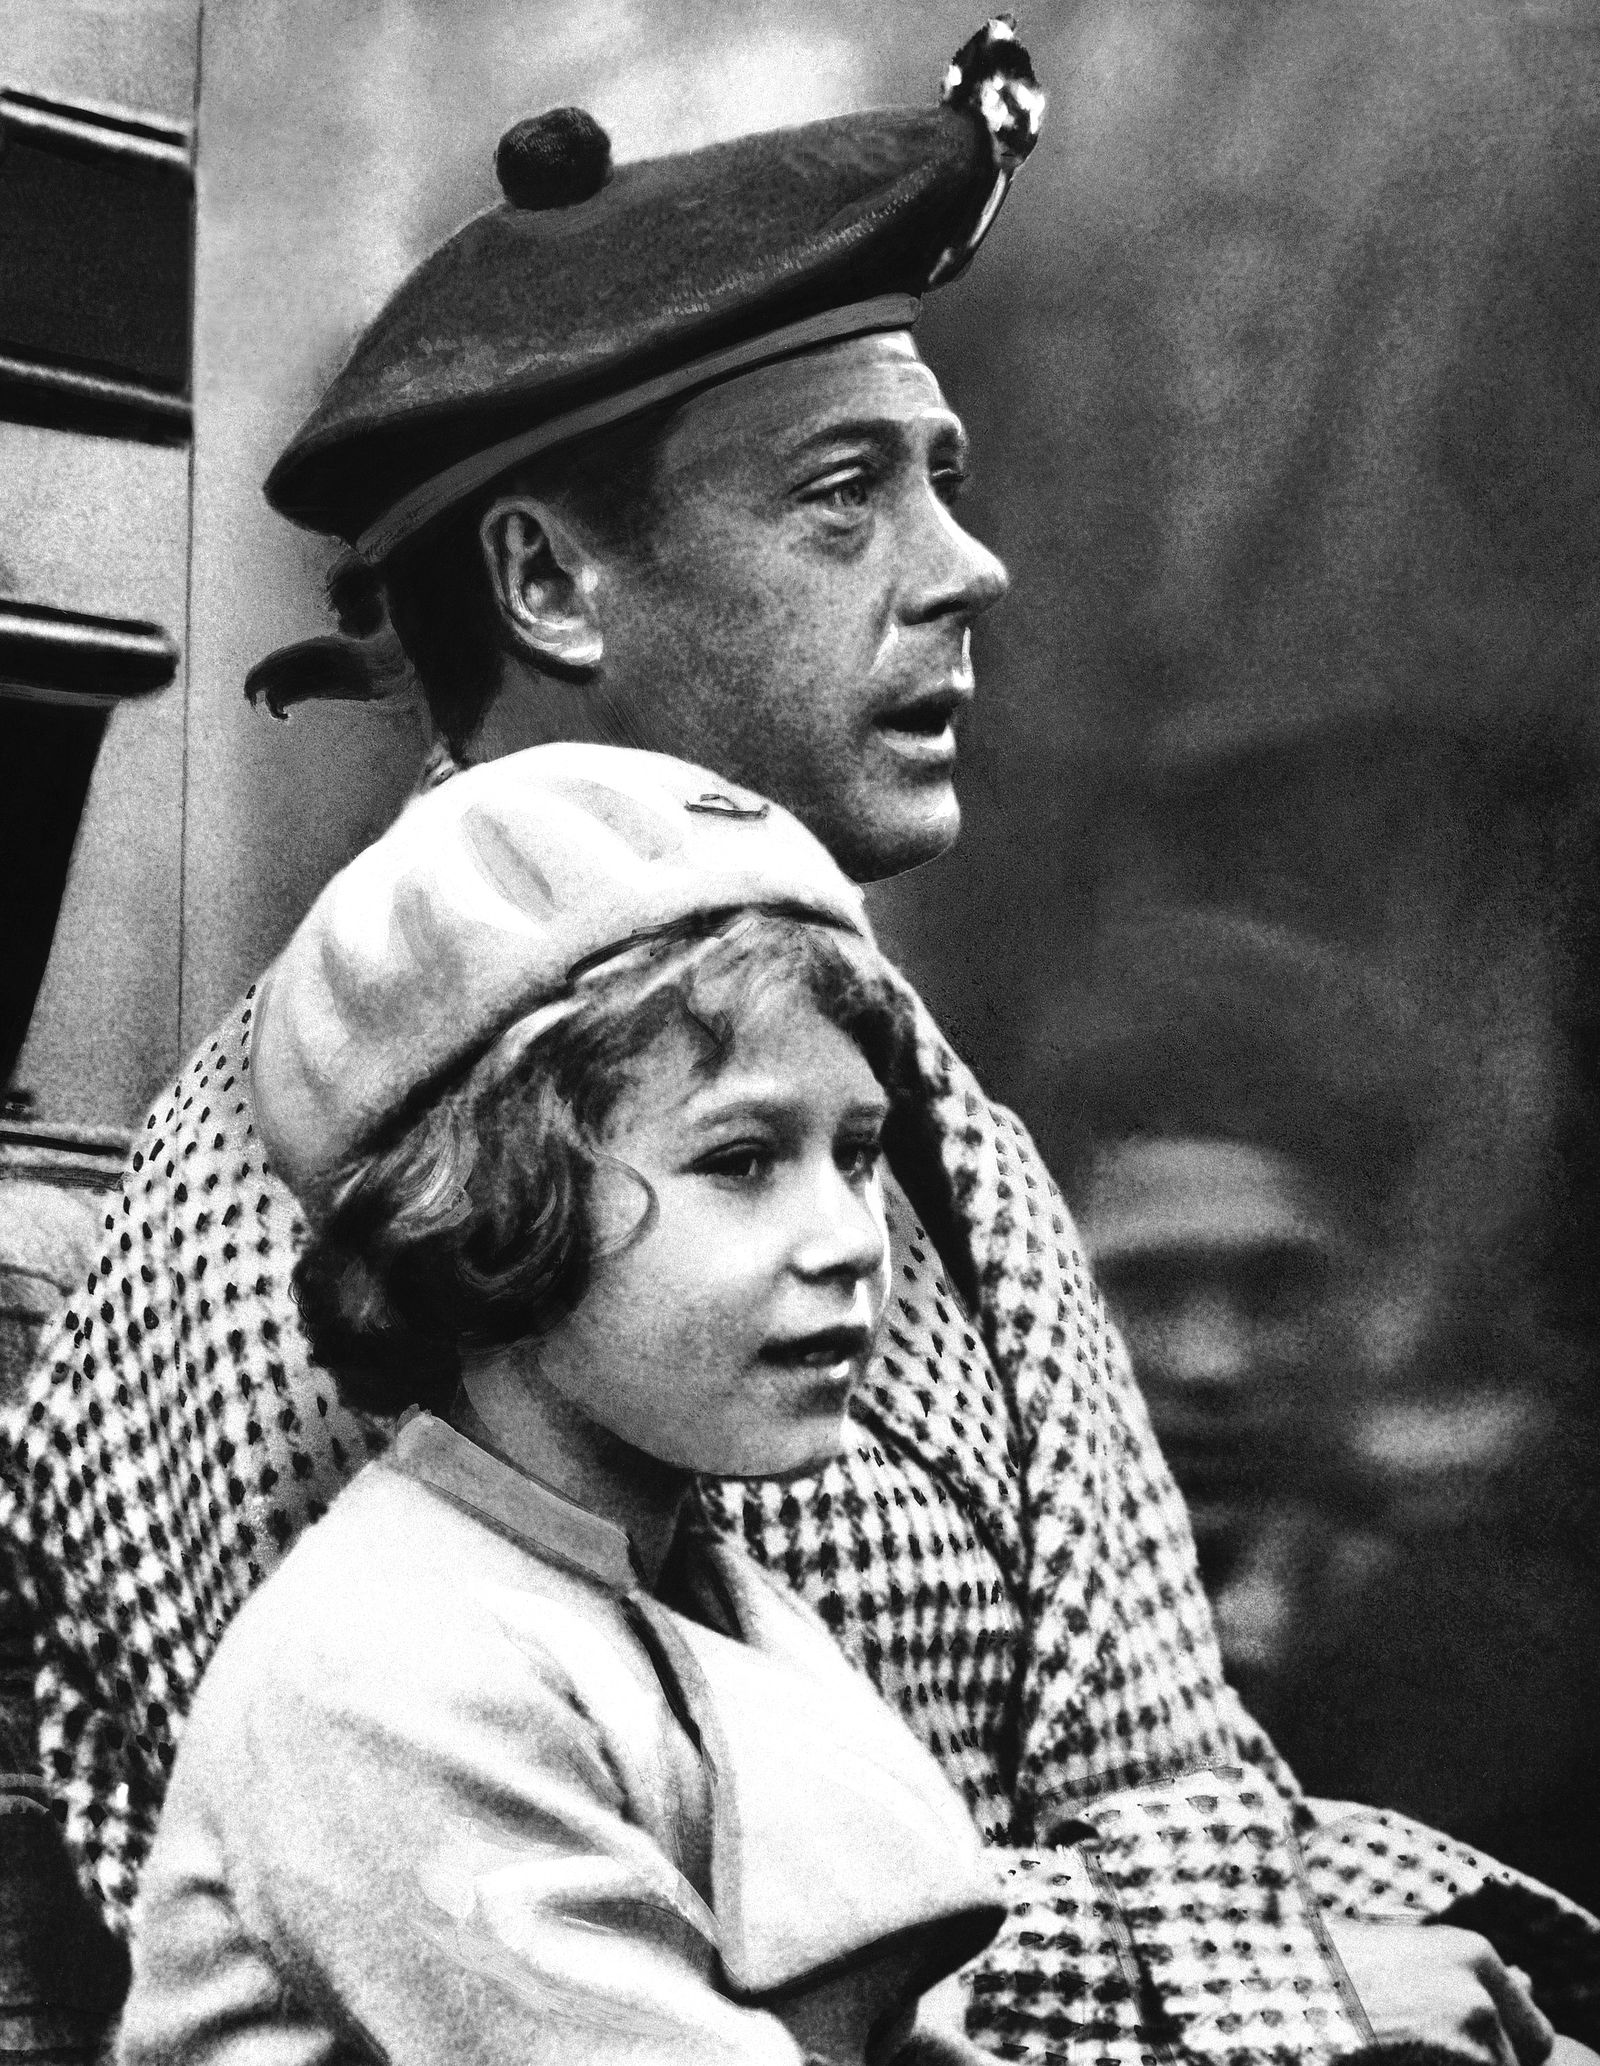 Công chúa Elizabeth cùng chú của mình Edward, Hoàng tử xứ Wales, trong chuyến thăm Balmoral, Scotland, tháng 9/1933. Ông Edward đăng cơ năm 1936 nhưng bất ngờ tuyên bố thoái vị cuối năm đó. Sau đó, cha của Elizabeth tiếp quản.